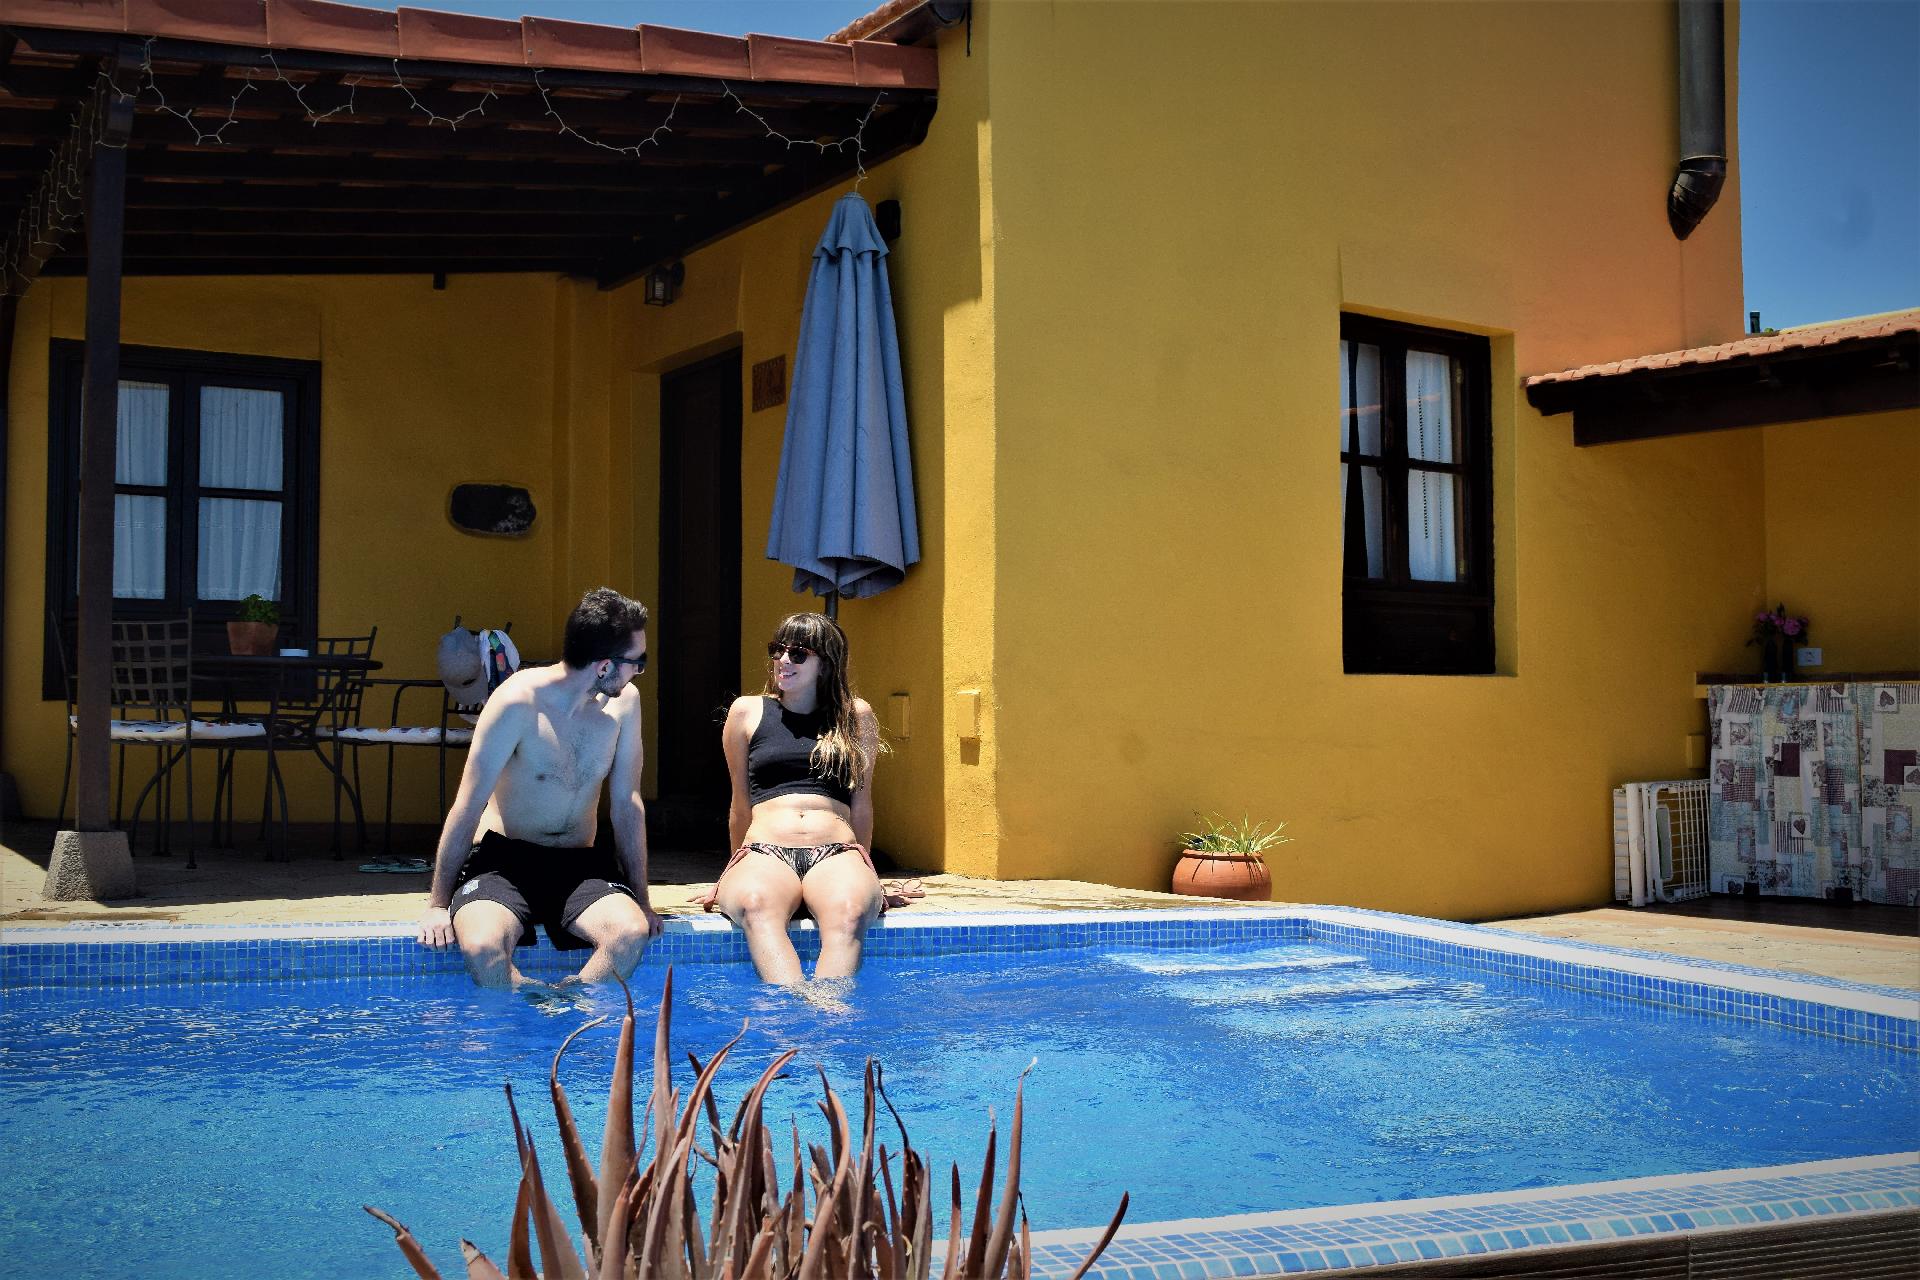 Gemütliches Ferienhaus in El Rosario mit Priv Ferienhaus auf Teneriffa